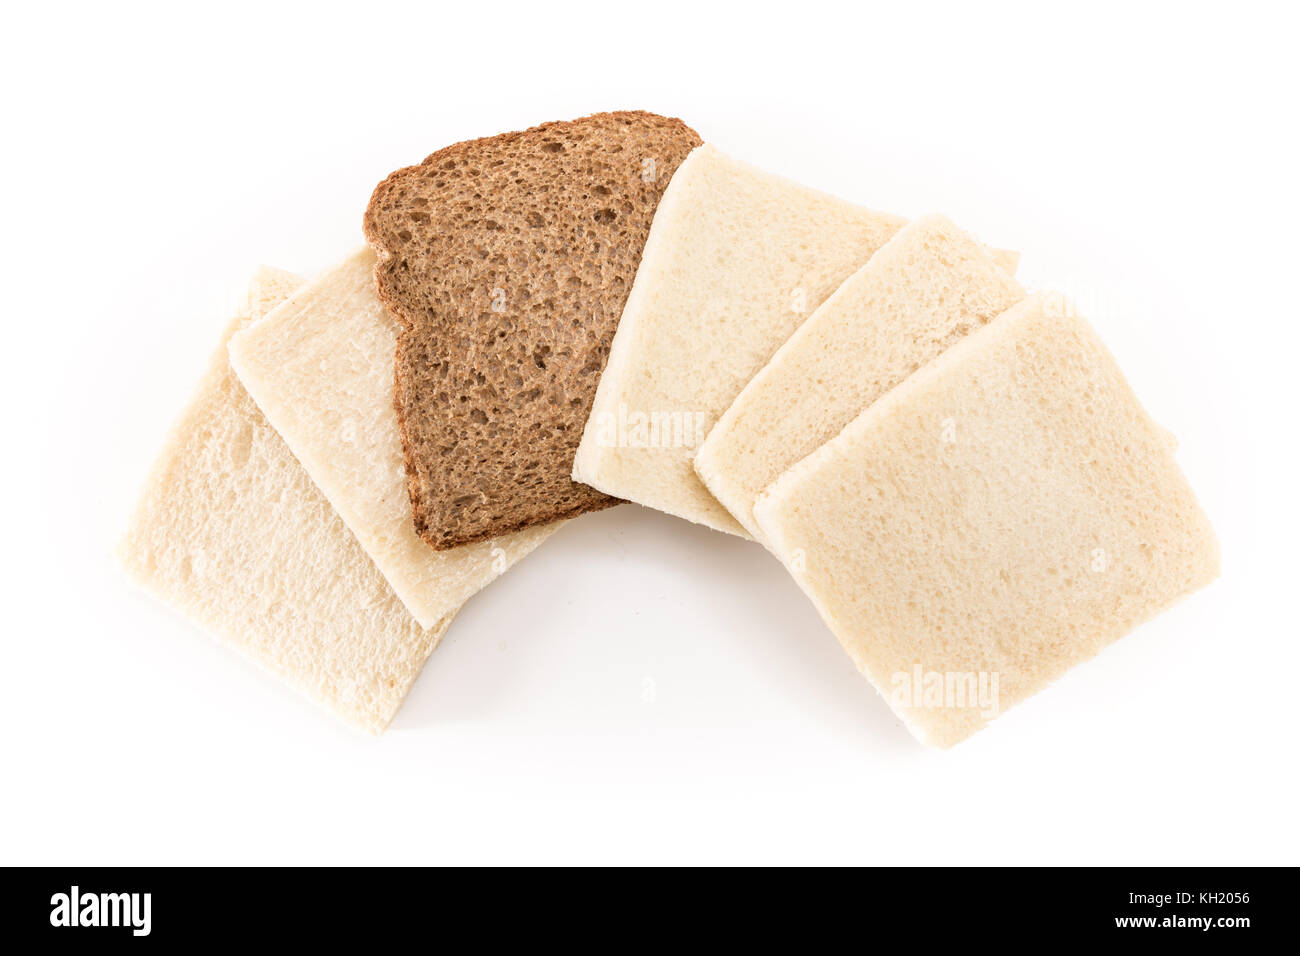 Pas de sandwich blanc croûte les tranches de pain avec l'un d'eux mêmes brown, sur fond blanc. Banque D'Images